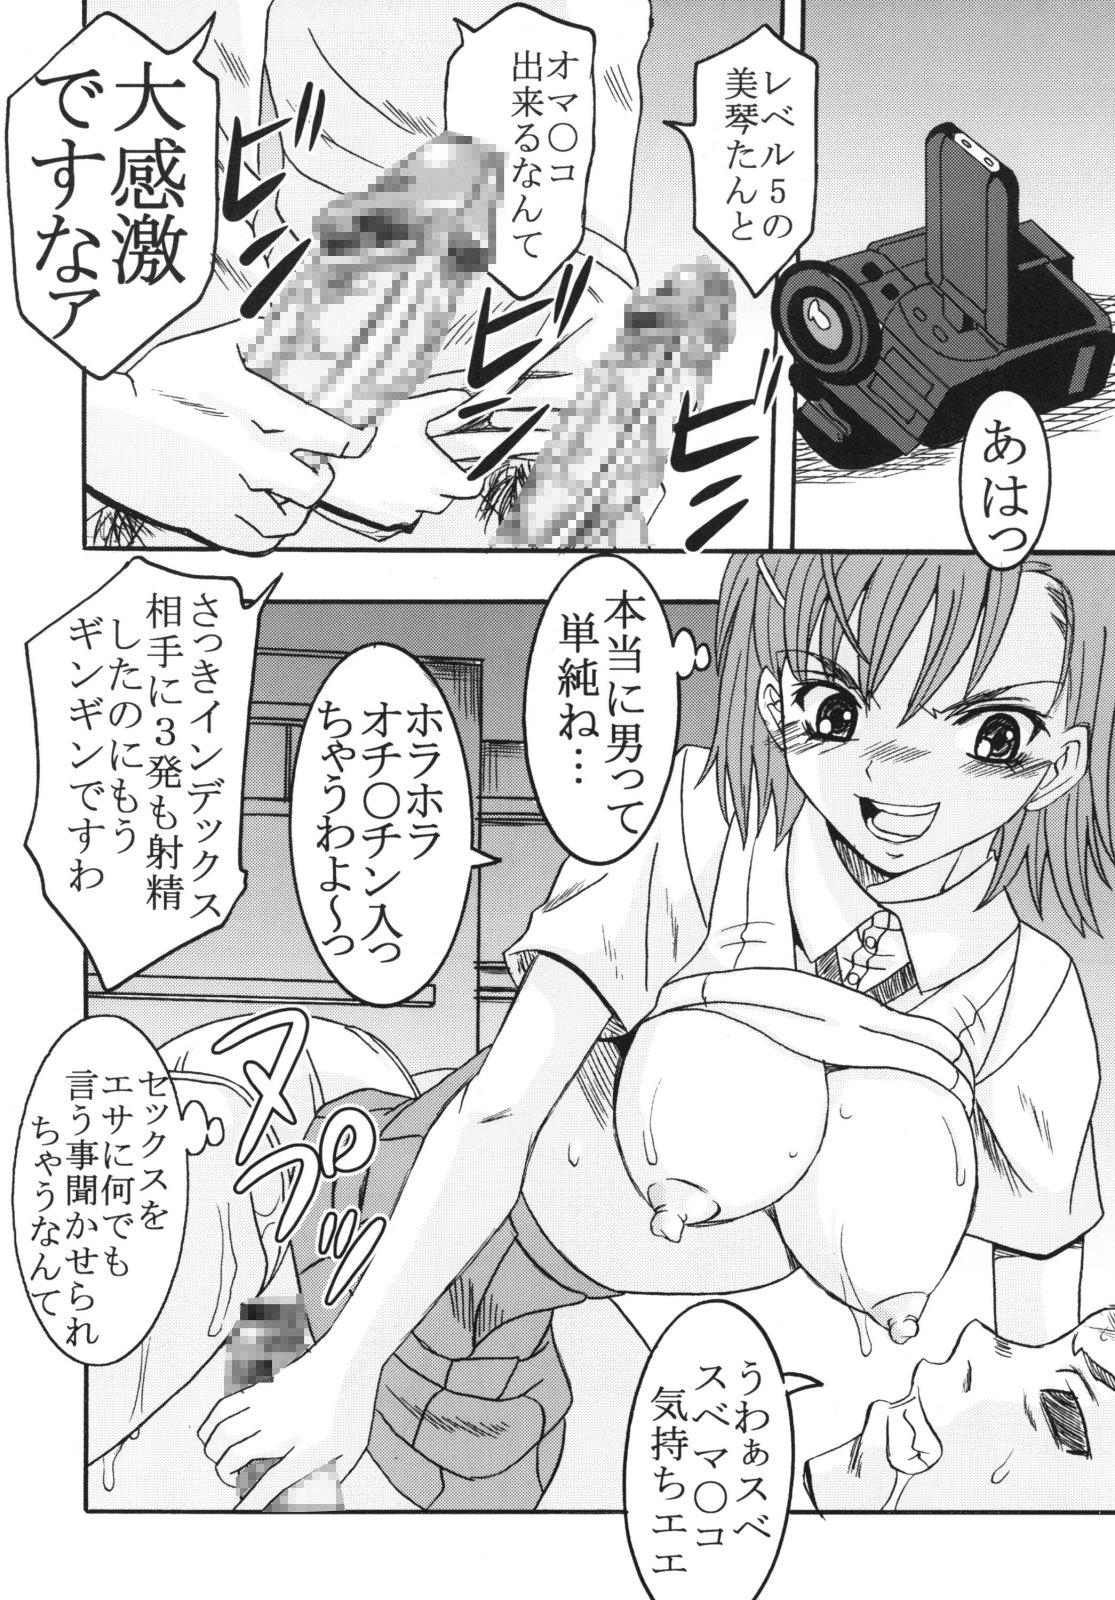 Busty Toaru Otaku no Index #2 - Toaru majutsu no index Gay Cock - Page 14